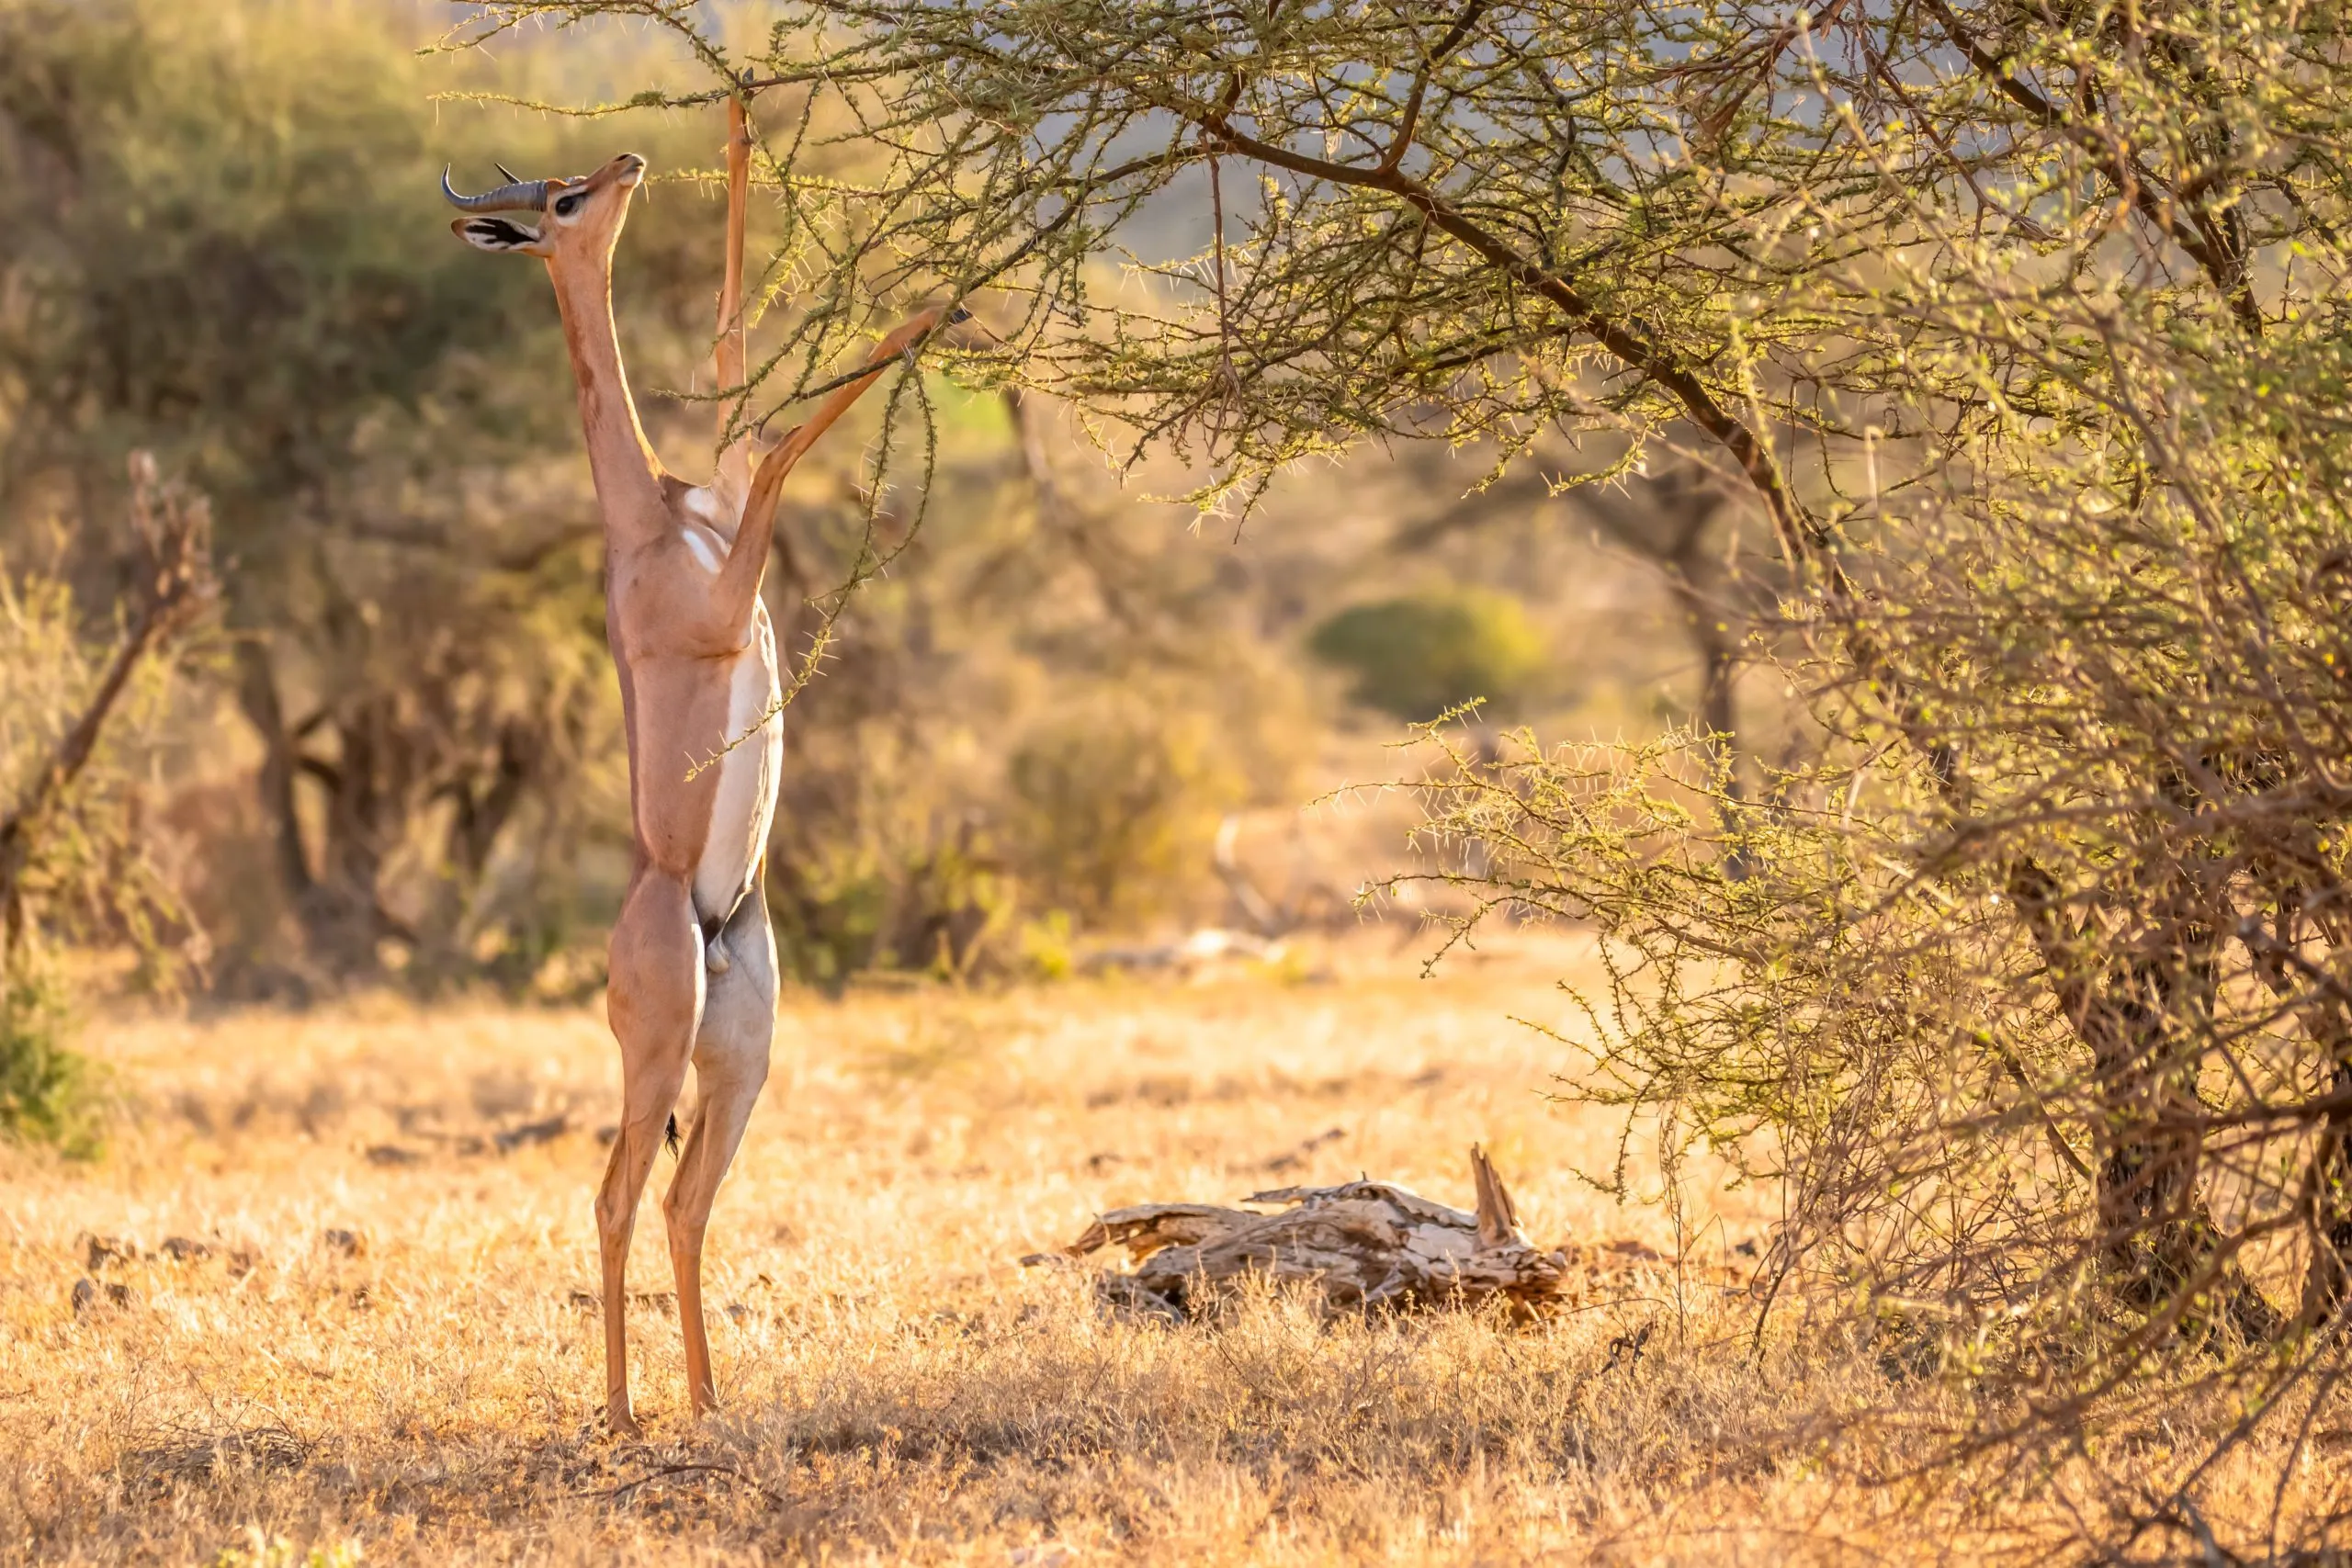 Gerenuk, Litocranius walleri também girafa gazela, antílope de pescoço comprido, pescoço e membros longos e delgados, de pé sobre as patas traseiras durante a alimentação das folhas. Cores africanas nocturnas. Reserva Nacional de Samburu, Quénia